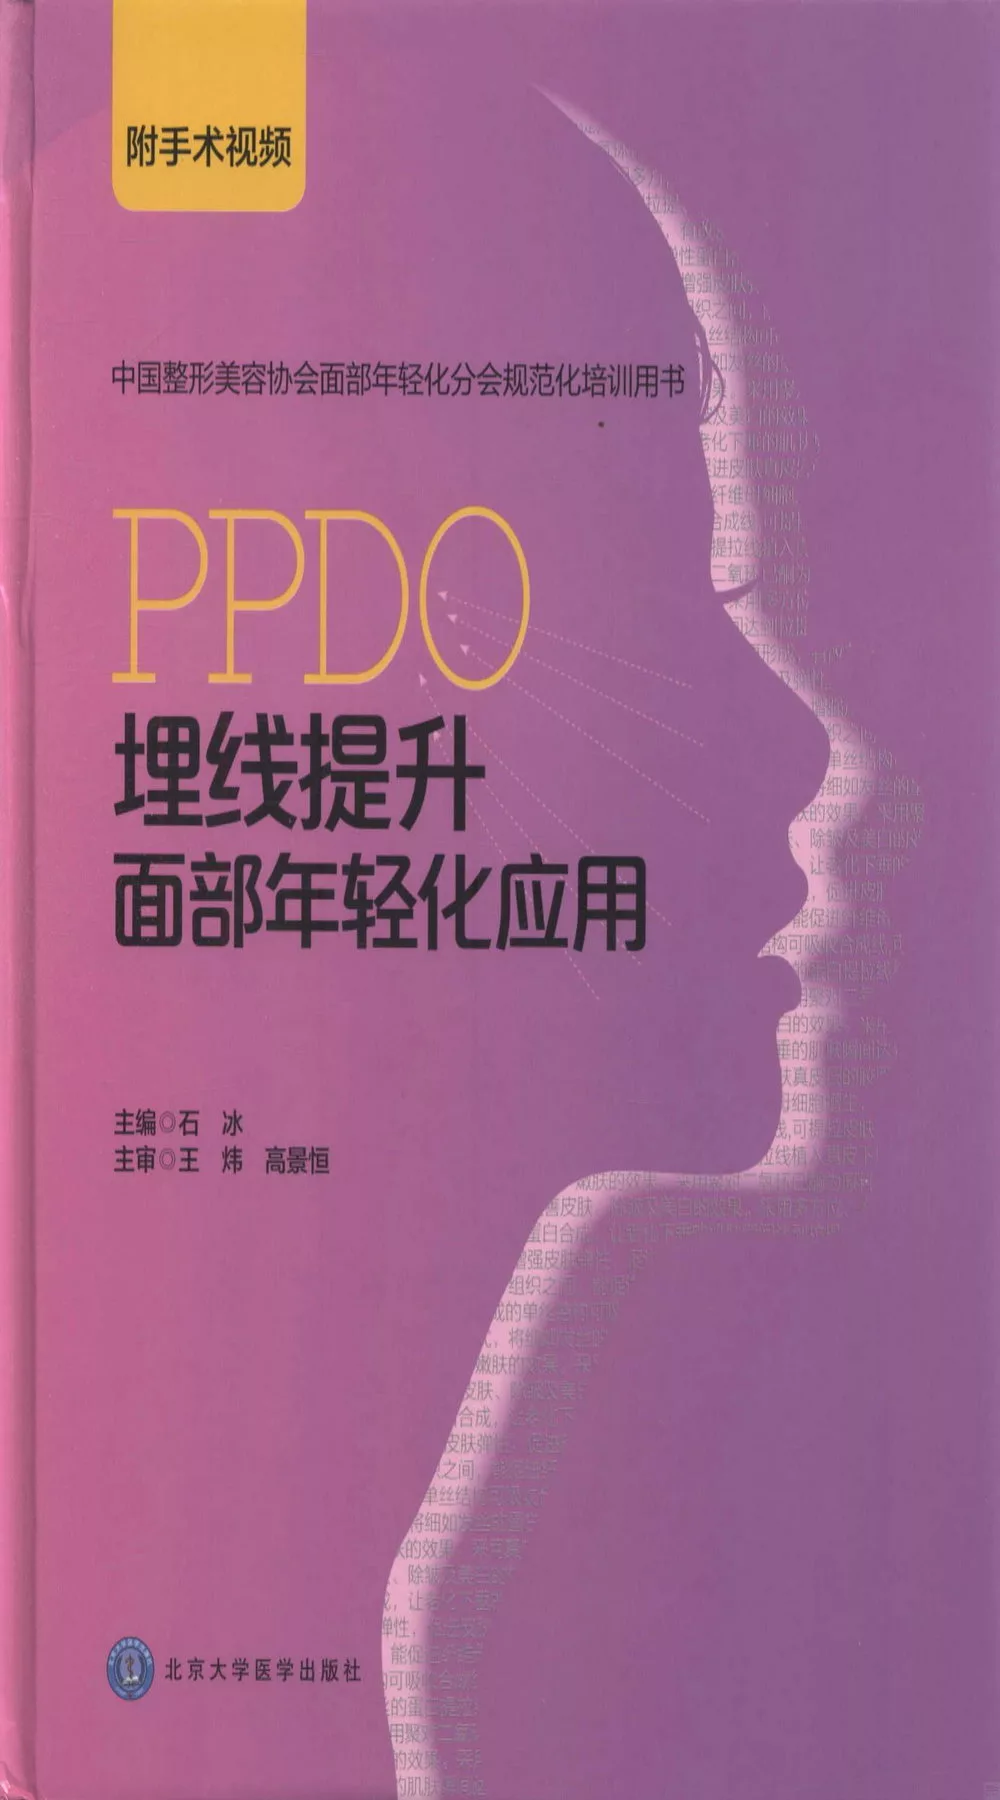 PPDO埋線提升面部年輕化應用